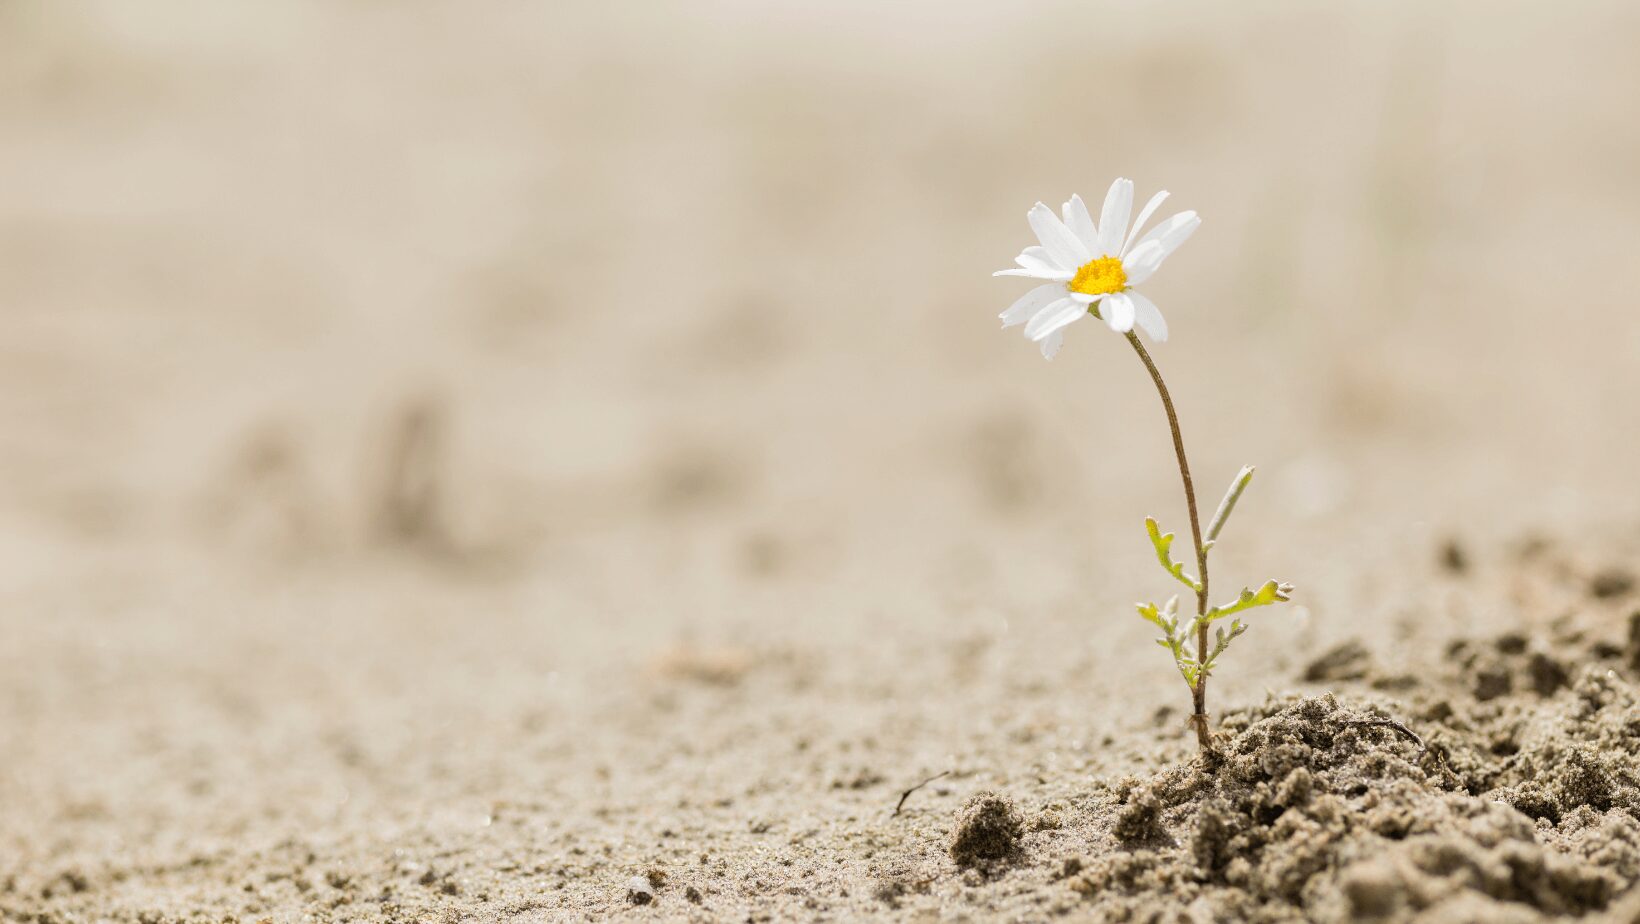 symbole de résilience parce qu'une fleur s'épanouit sur un sol autrement sec et stérile